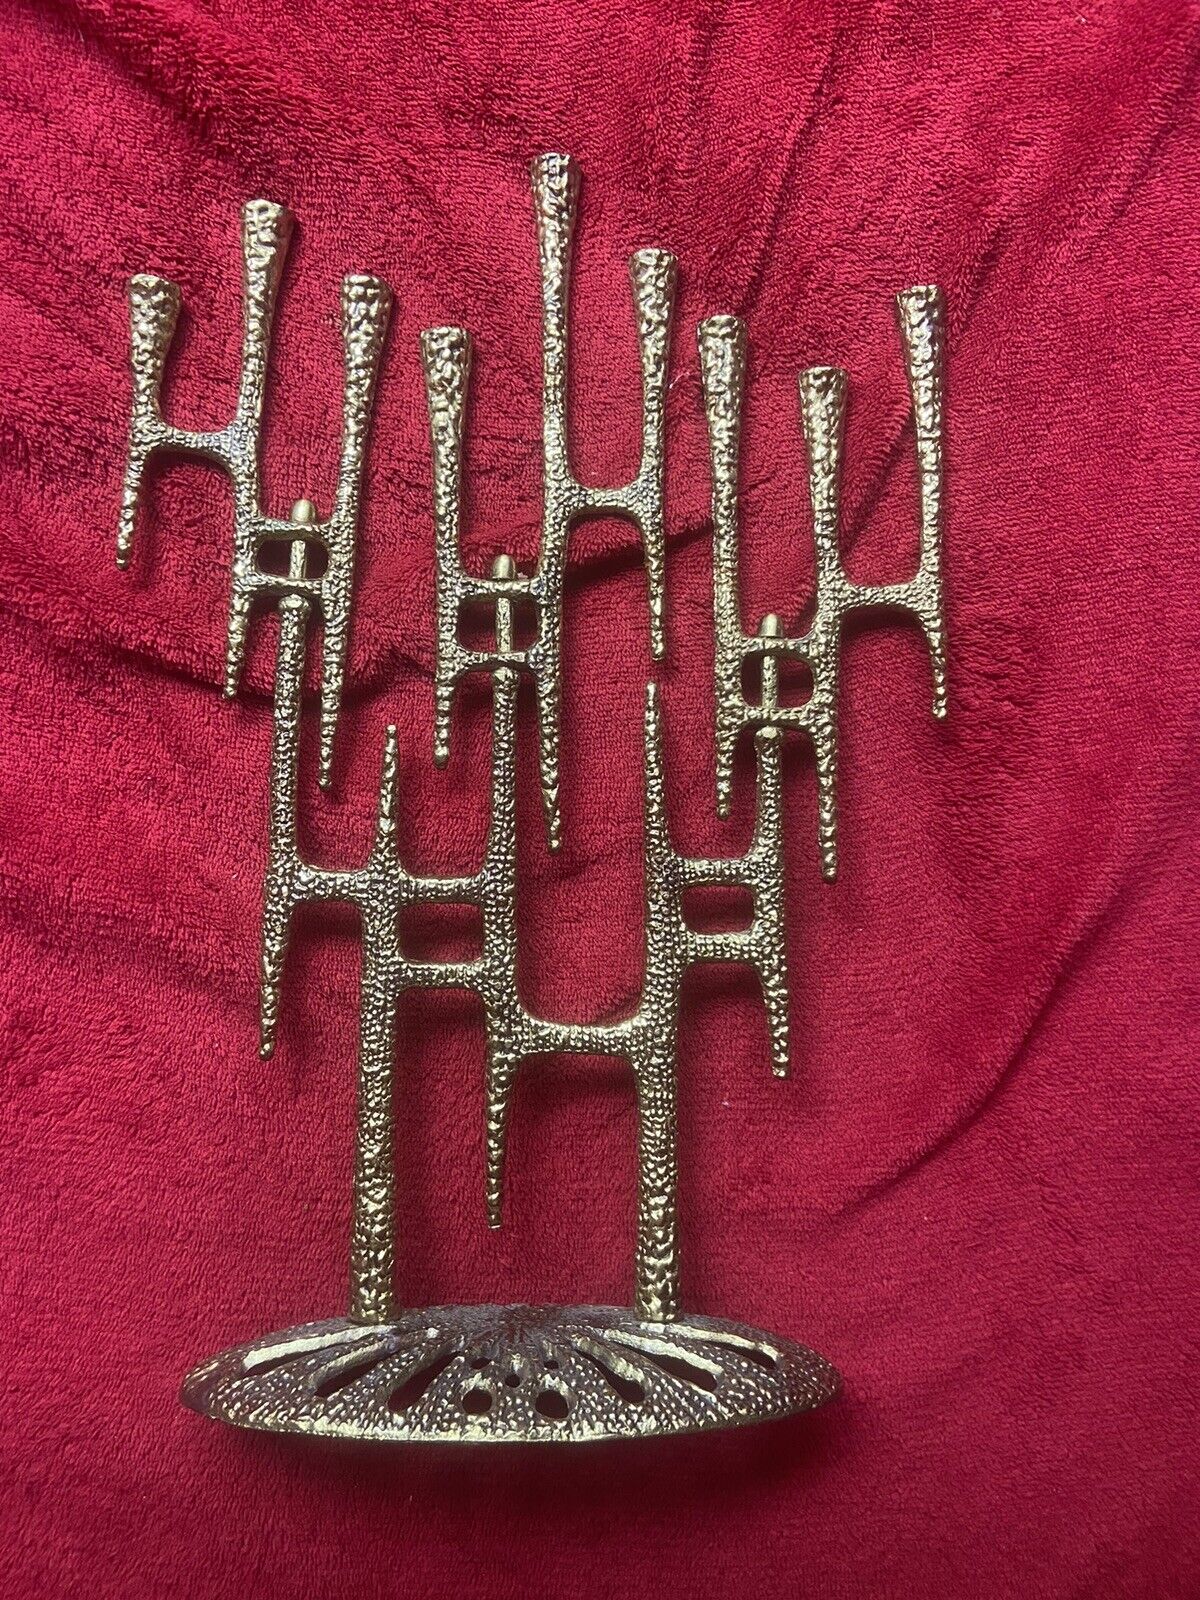 Wainberg Brutalist Menorah Brass Articulated Made in Israel Vintage Judaica